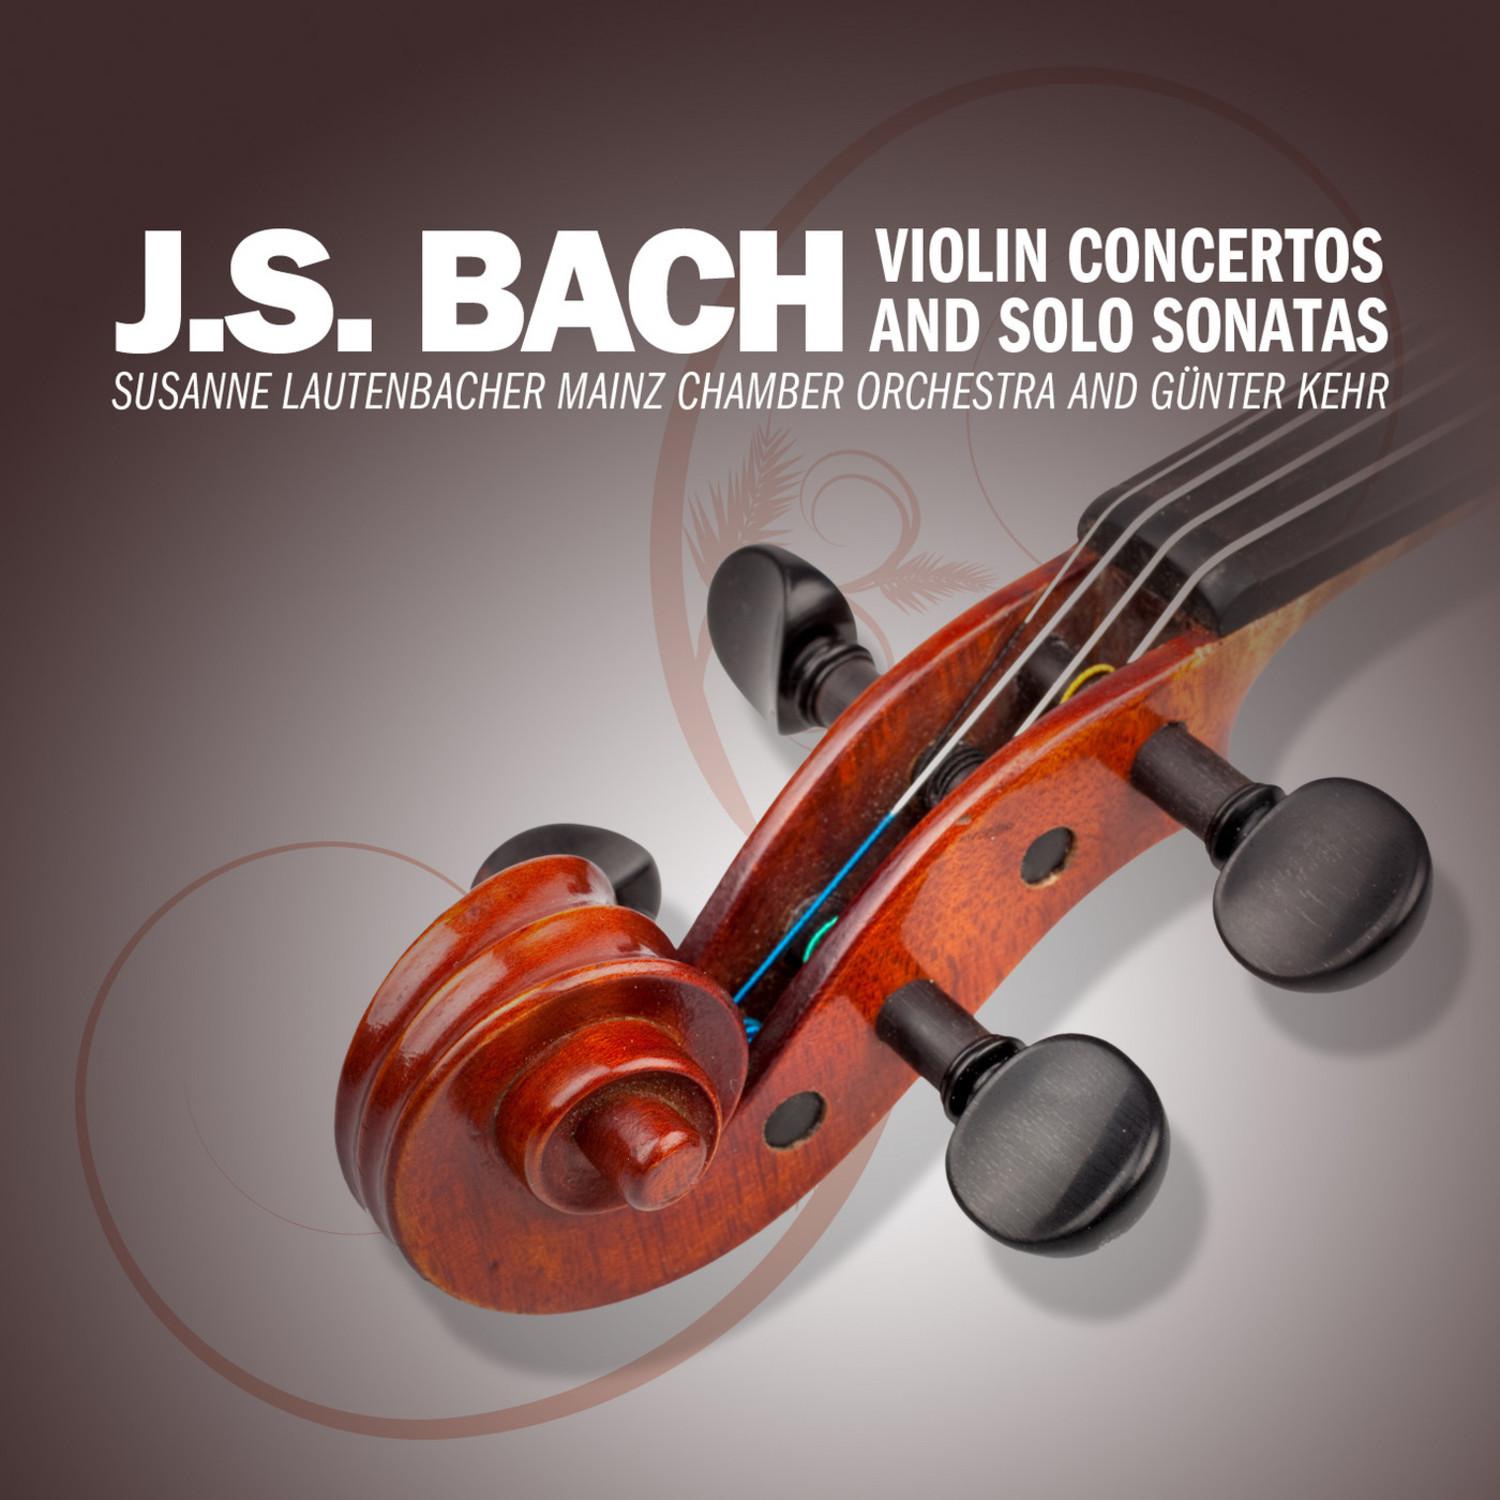 Concerto No. 1 in A Minor for Violin and Strings, BWV 1041: I. Allegro moderato